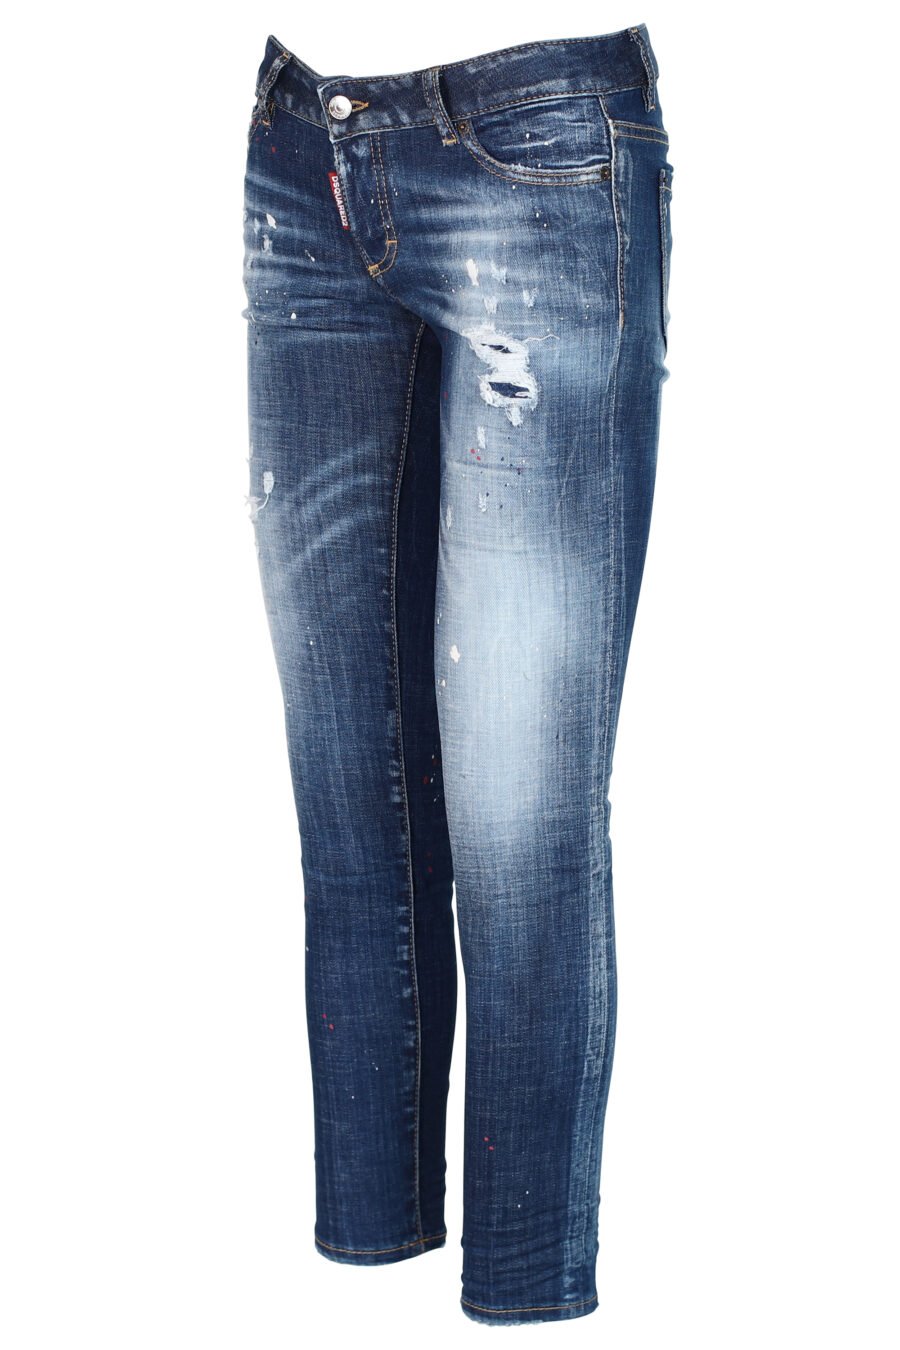 Jeans "Jennifer Jean" blau mit Farbspritzern und Abnutzungseffekt - 8052134937259 2